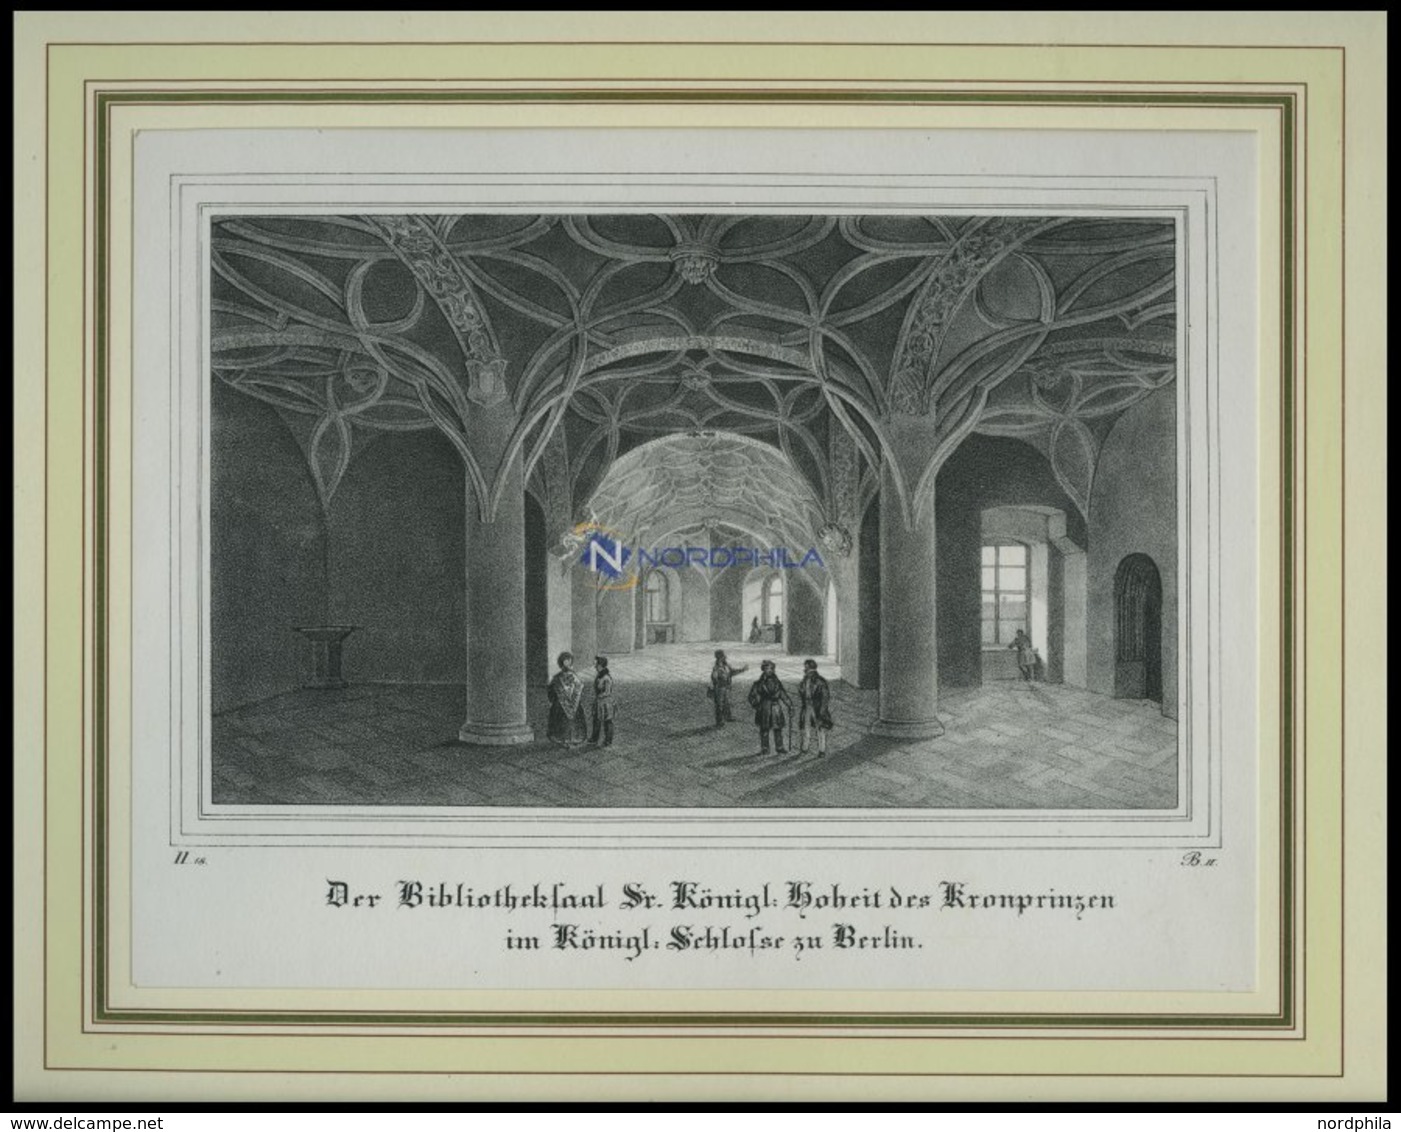 BERLIN: Bibliotheksaal Des Kronprinzen Im Königlichen Schloß, Lithographie Aus Borussia Um 1839 - Lithographien